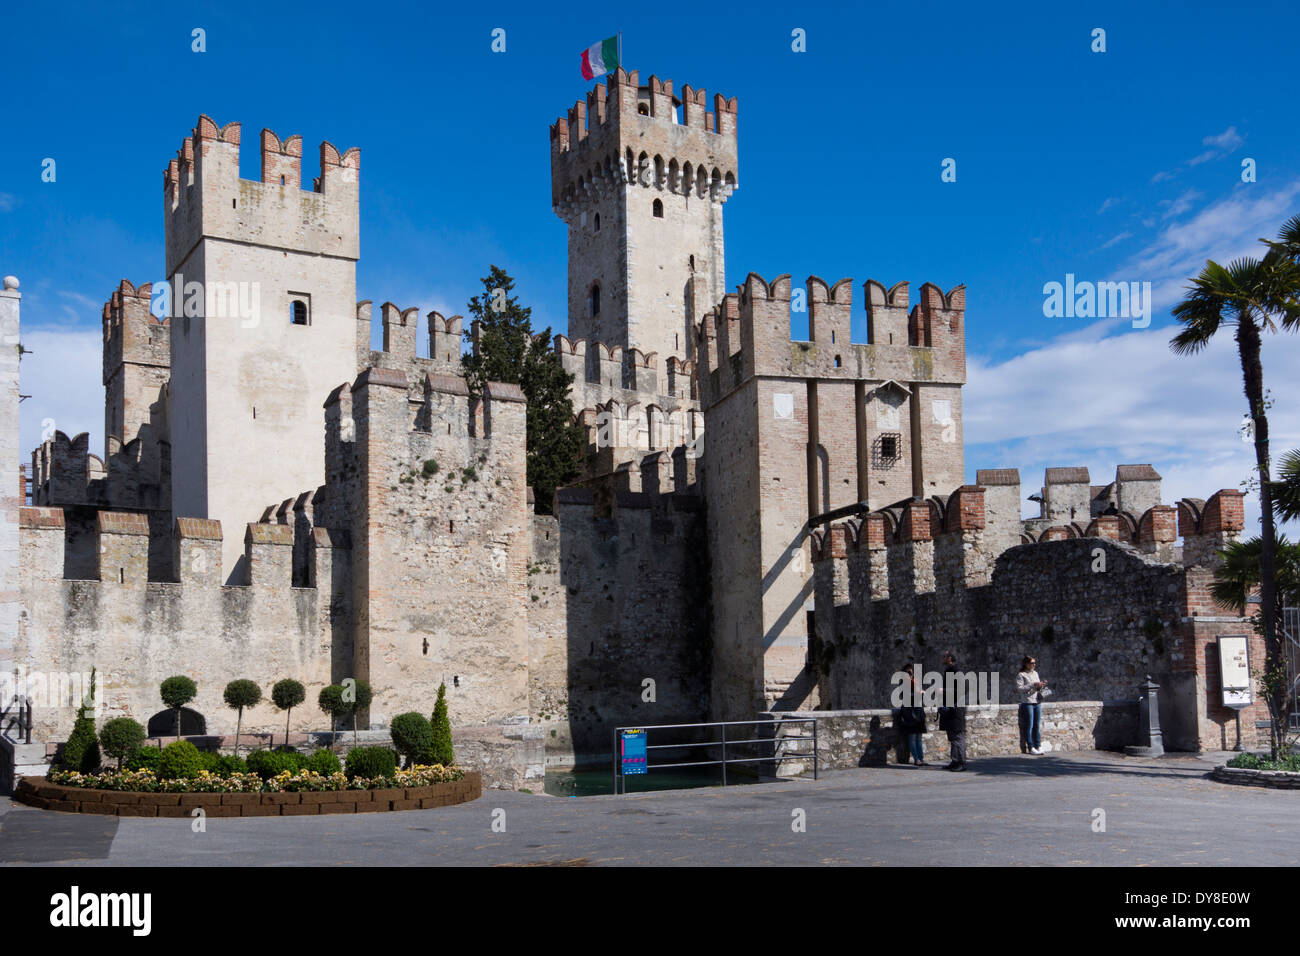 Castello scaligero, Sirmione sul lago di garda, Italia, Europa Foto Stock